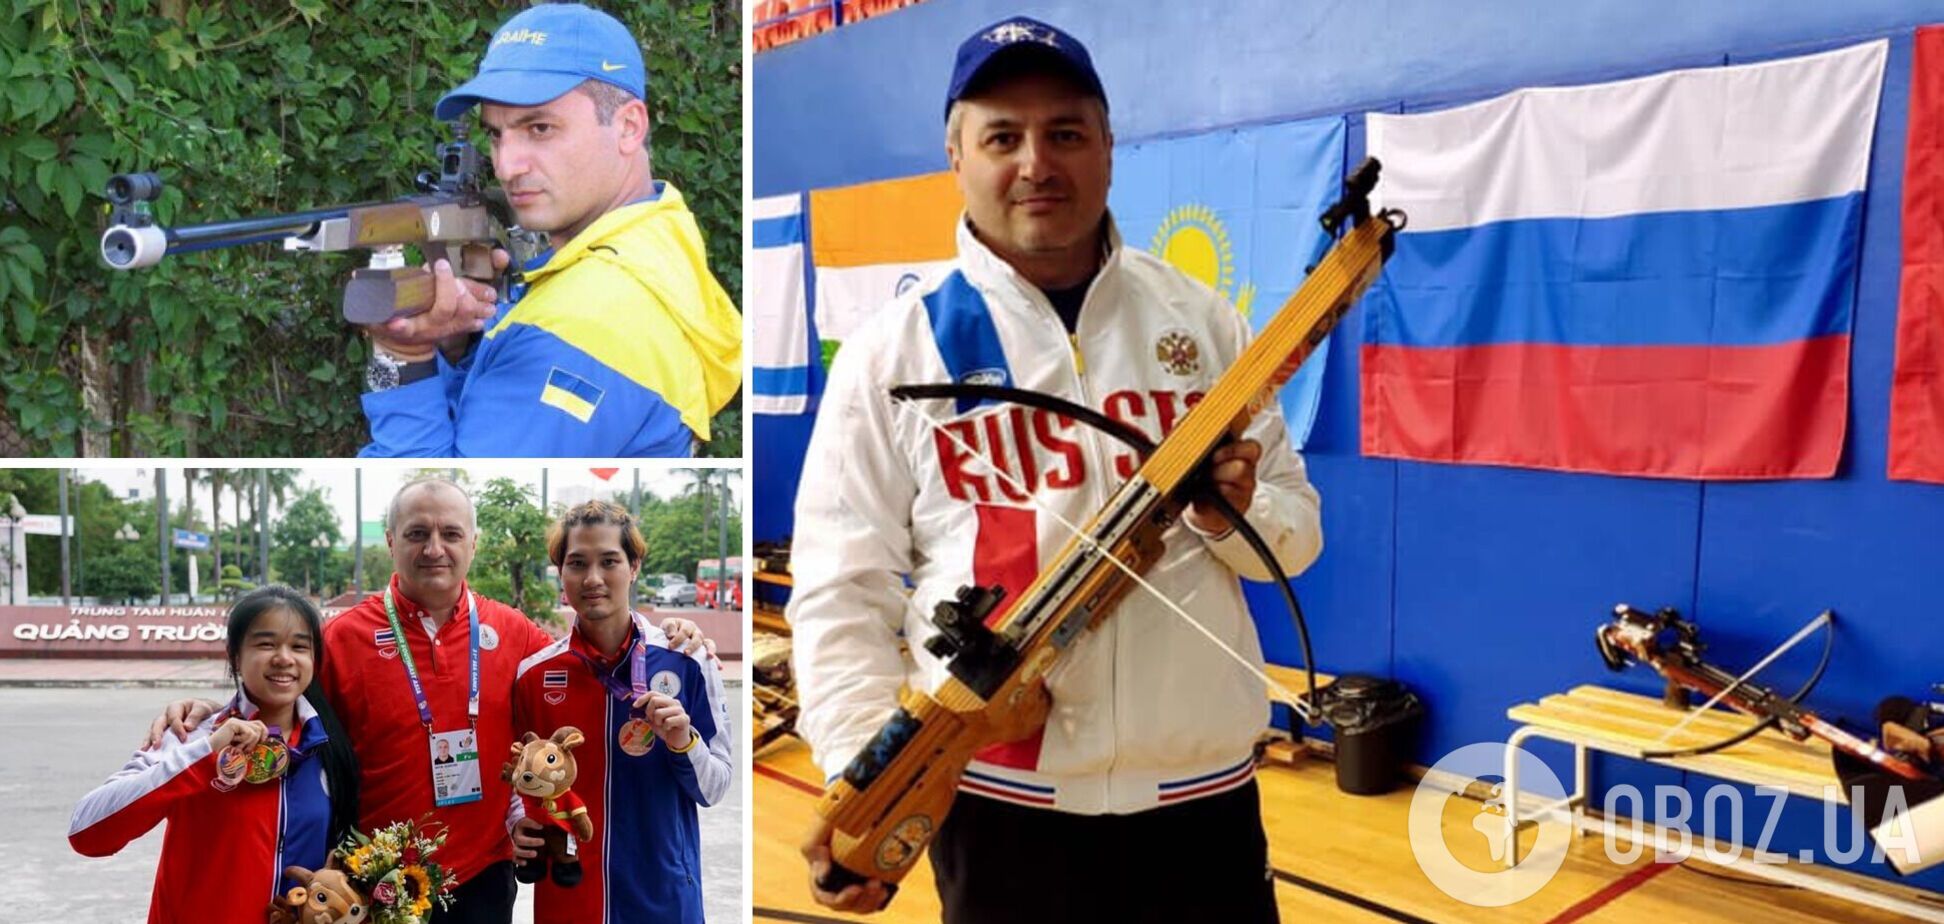 Предавший Украину олимпийский чемпион помогает пропаганде России, но живет в Таиланде